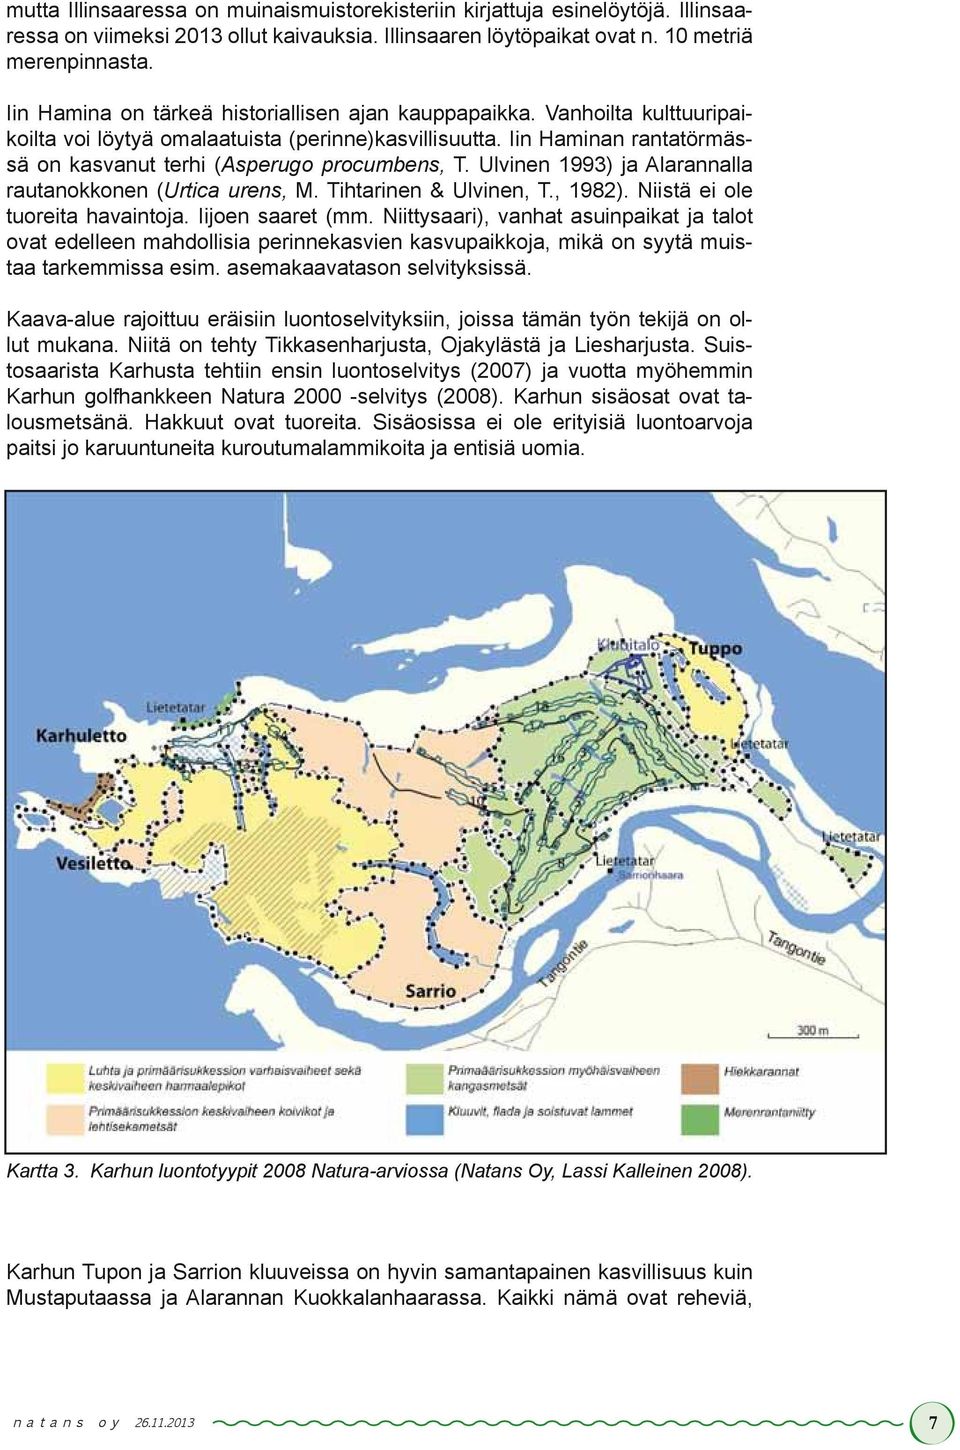 Iin Haminan rantatörmässä on kasvanut terhi (Asperugo procumbens, T. Ulvinen 1993) ja Alarannalla rautanokkonen (Urtica urens, M. Tihtarinen & Ulvinen, T., 1982). Niistä ei ole tuoreita havaintoja.